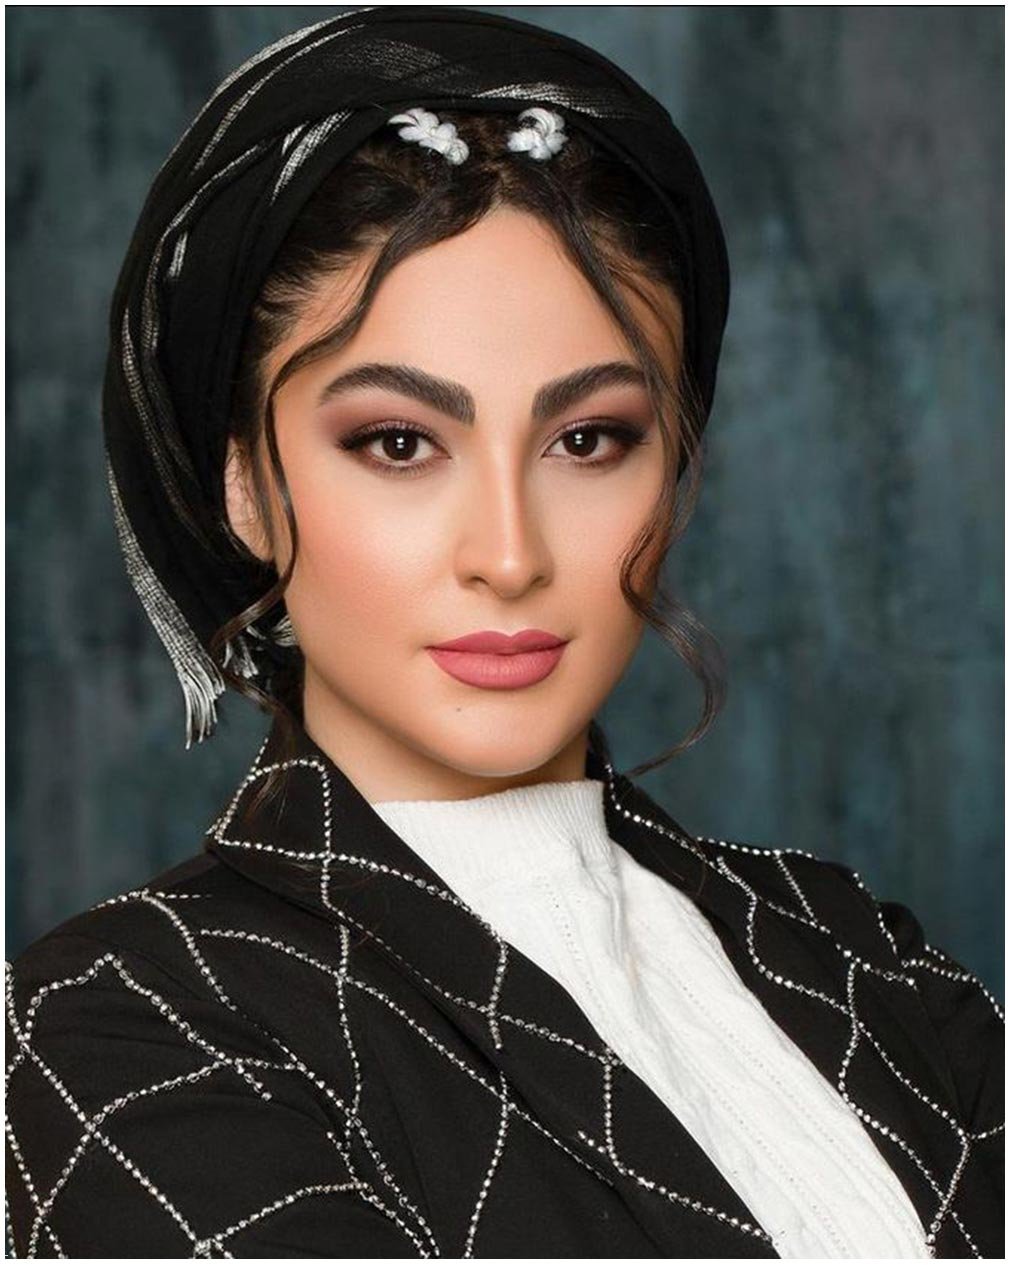 زیبایی خیره کننده این بازیگر زن ایرانی جلب توجه می کند +آلبوم تصاویر